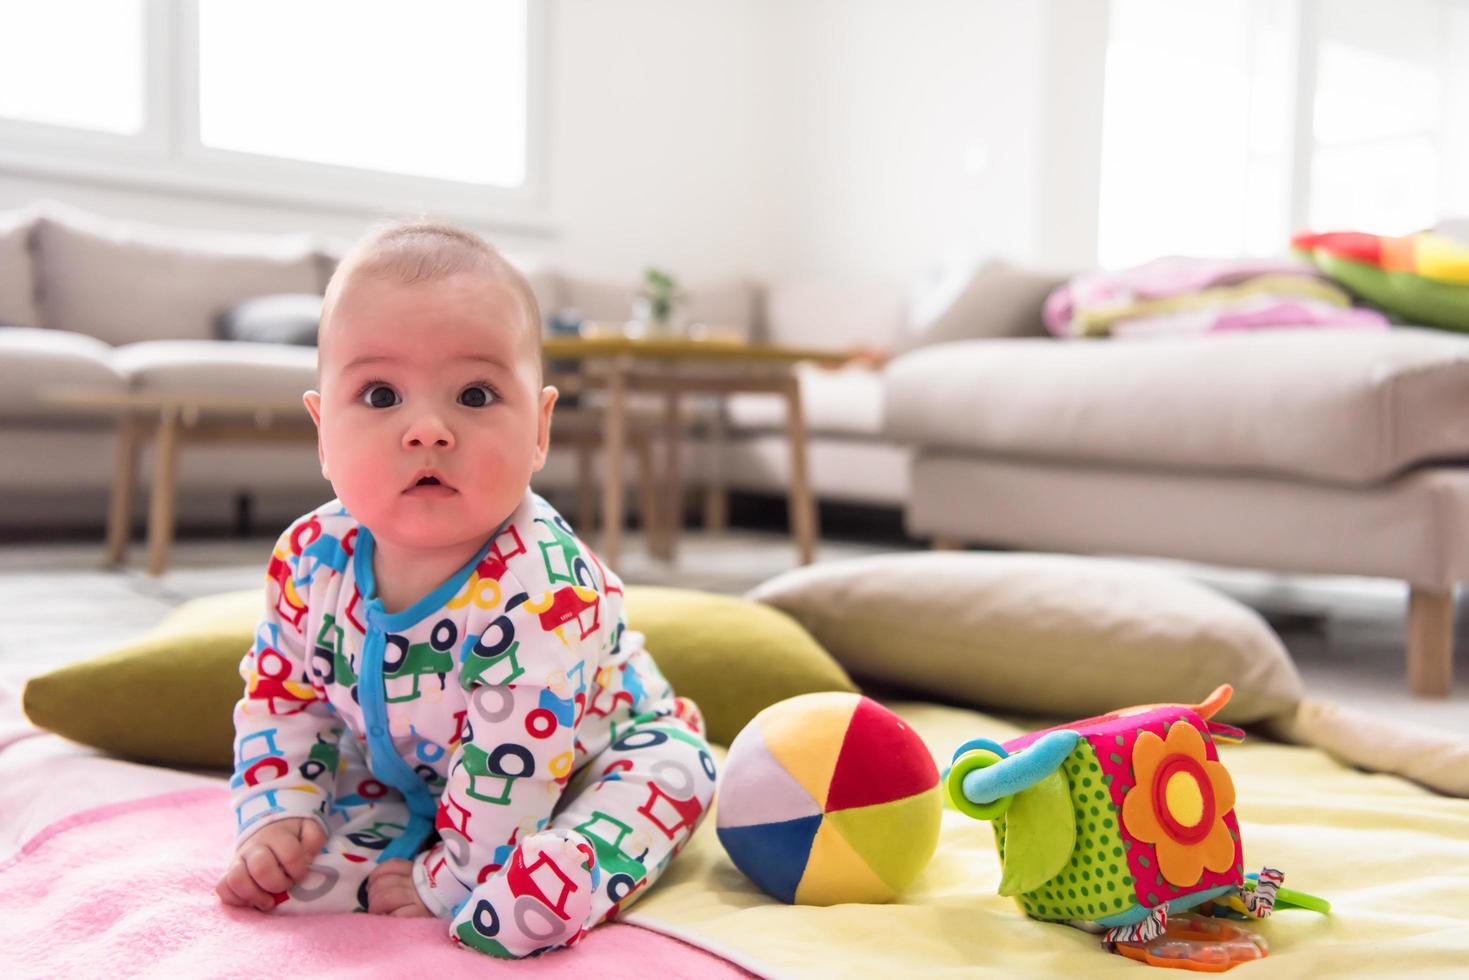 menino recém-nascido sentado em cobertores coloridos foto